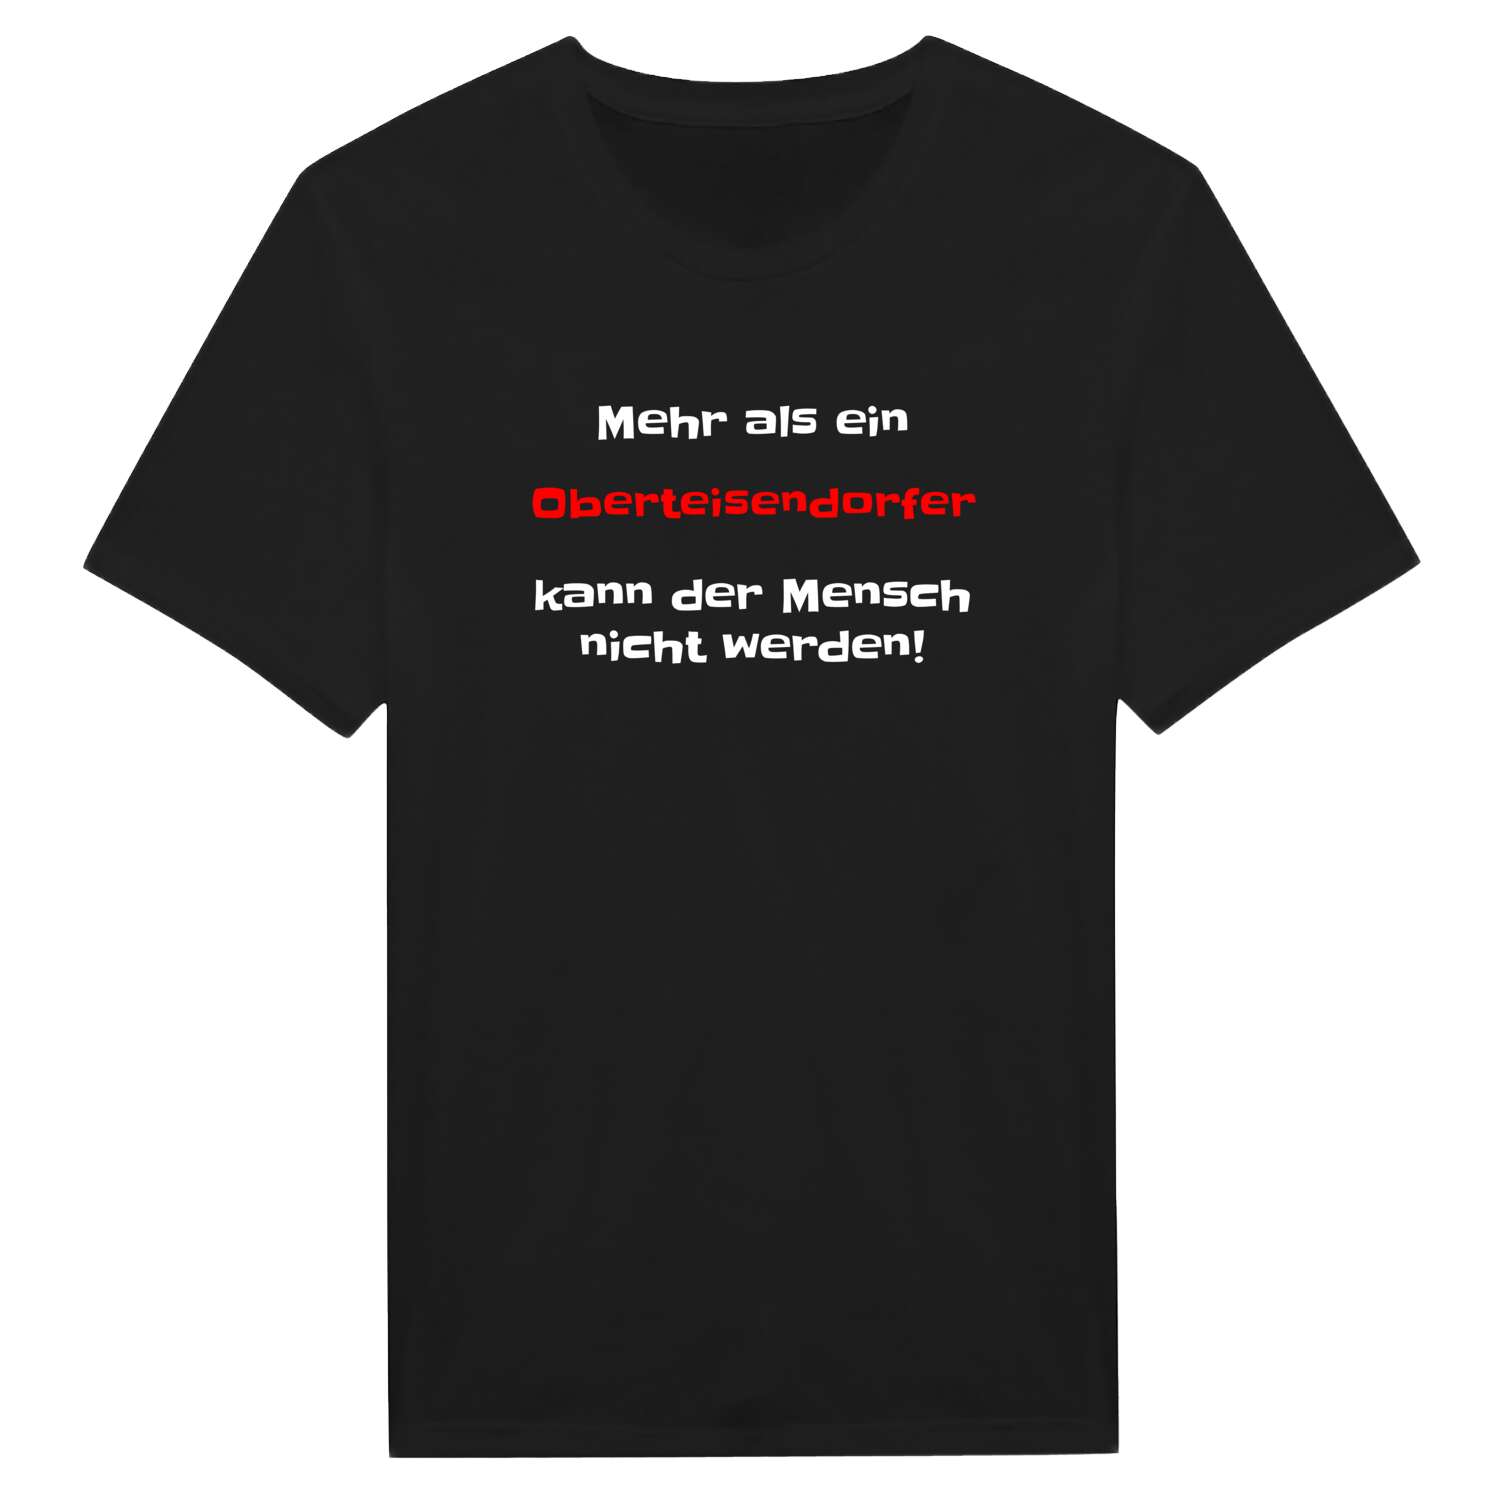 Oberteisendorf T-Shirt »Mehr als ein«